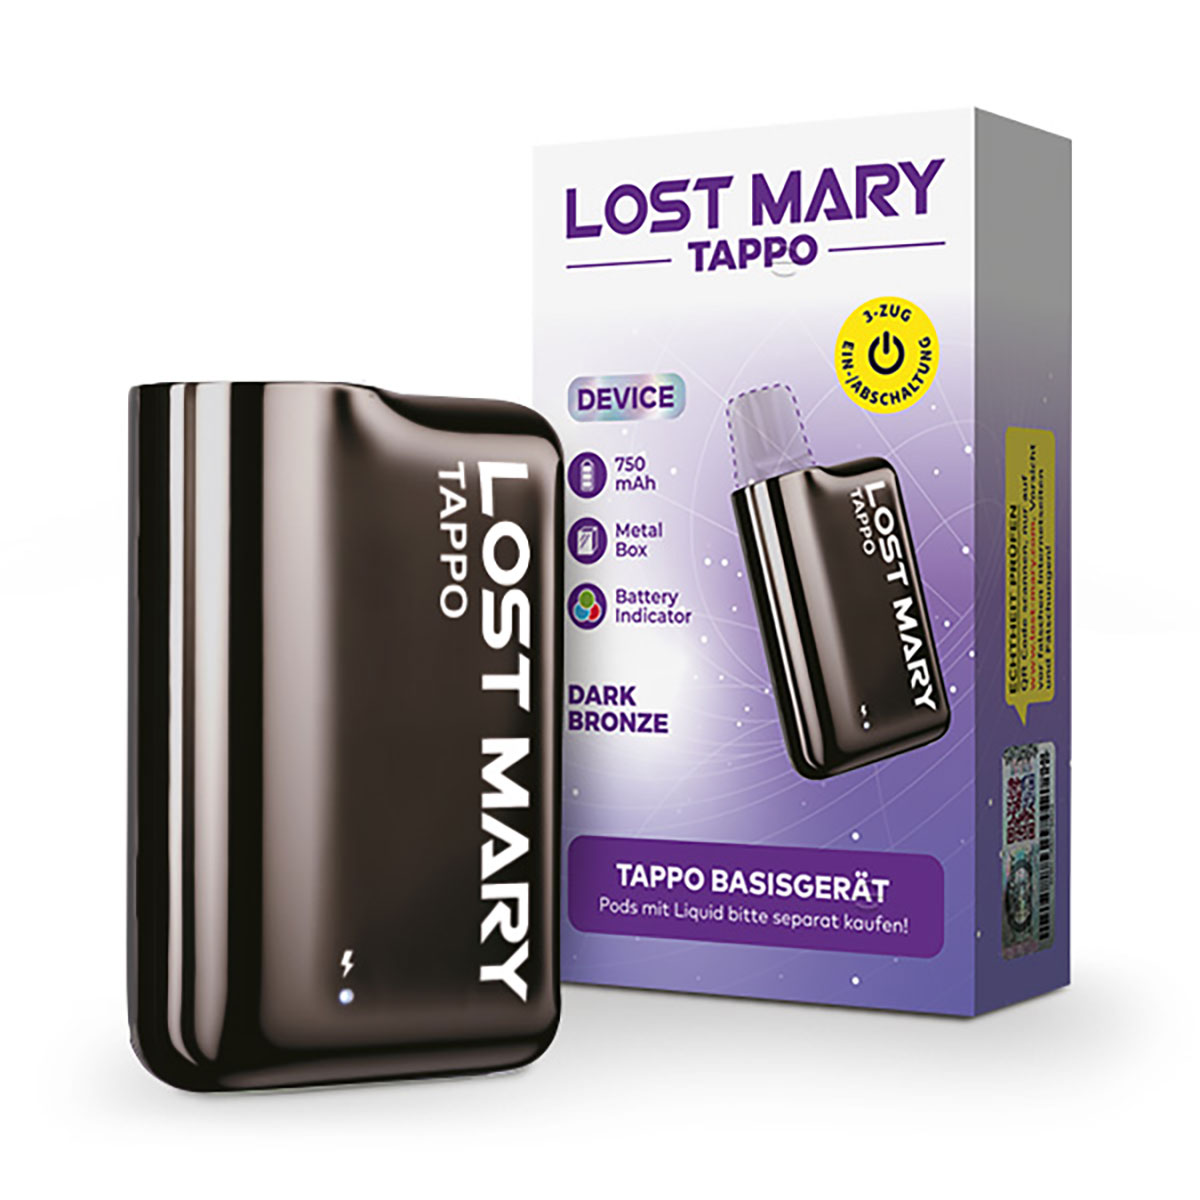 Lost Mary Tappo Dark Bronze Device